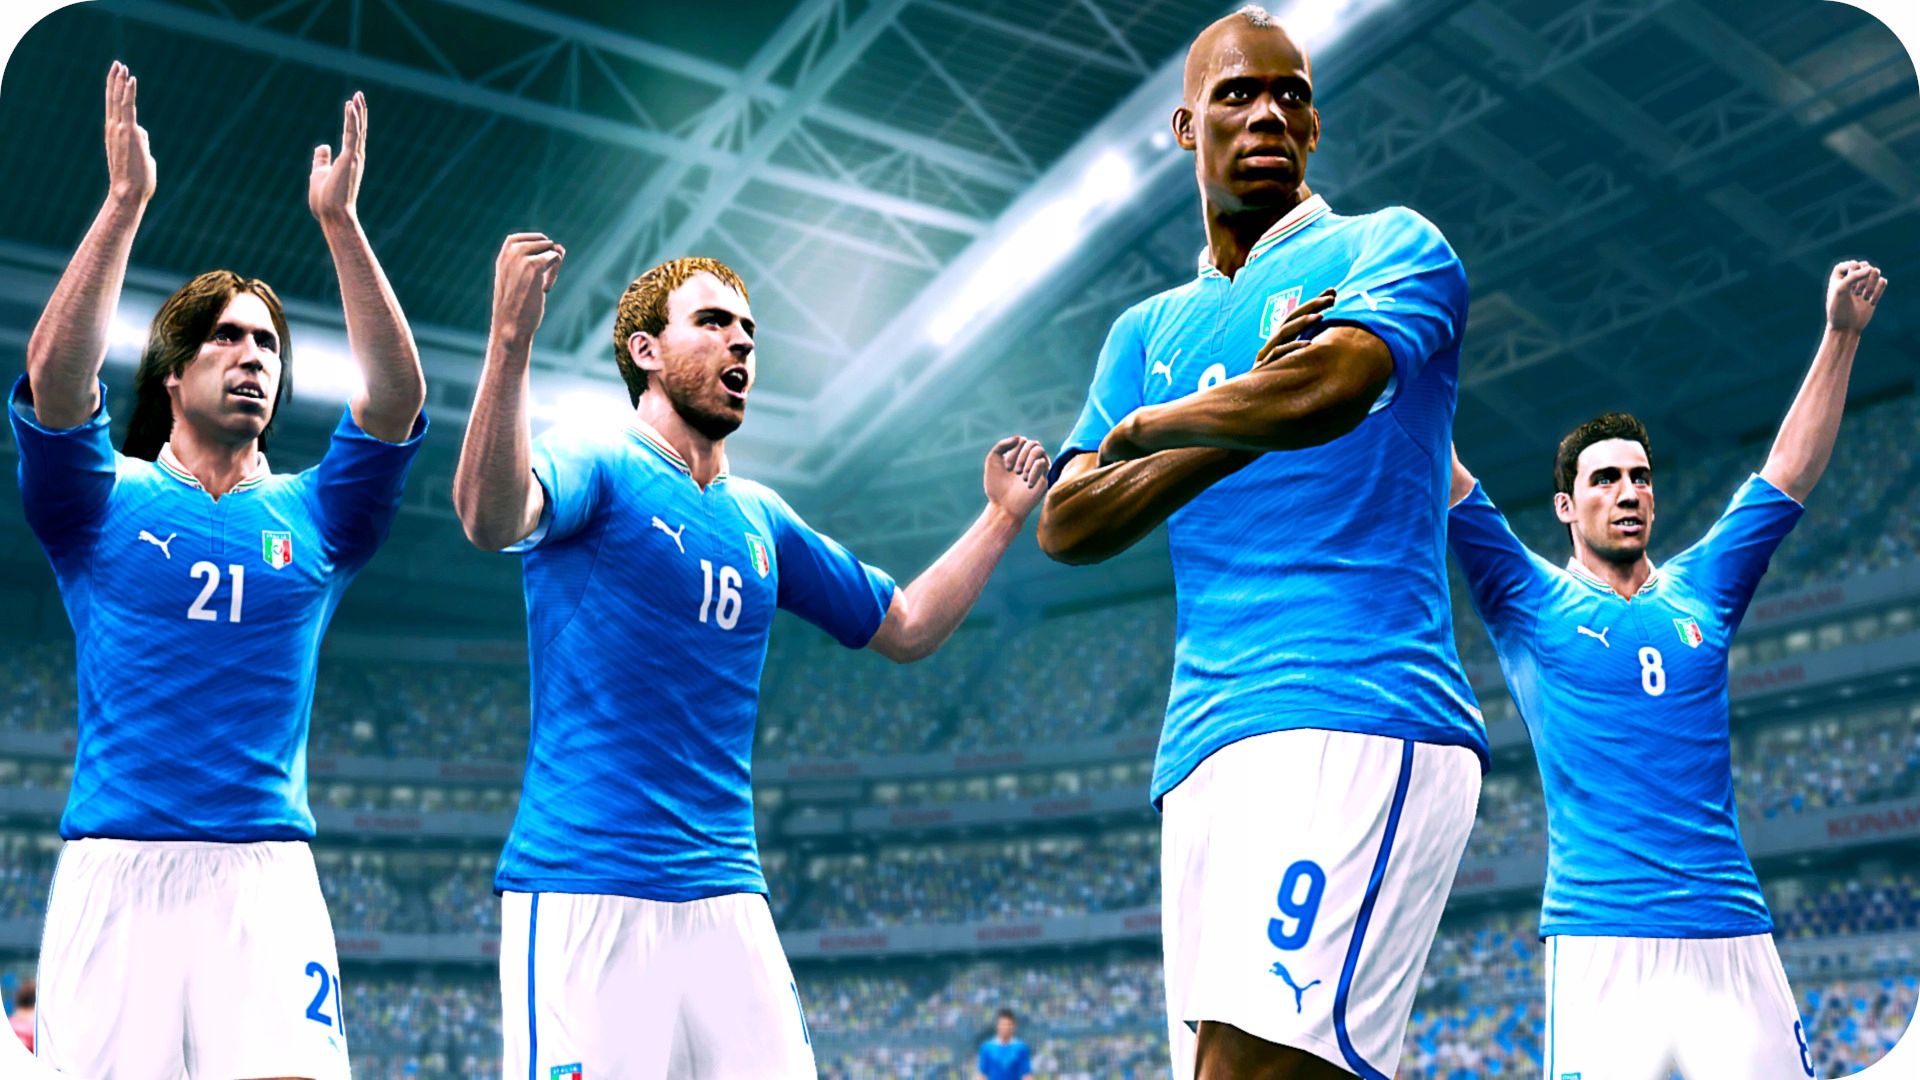 Xbox 360 Pro Evolution Soccer 2014 Polskie Wydanie szybka wysyłka